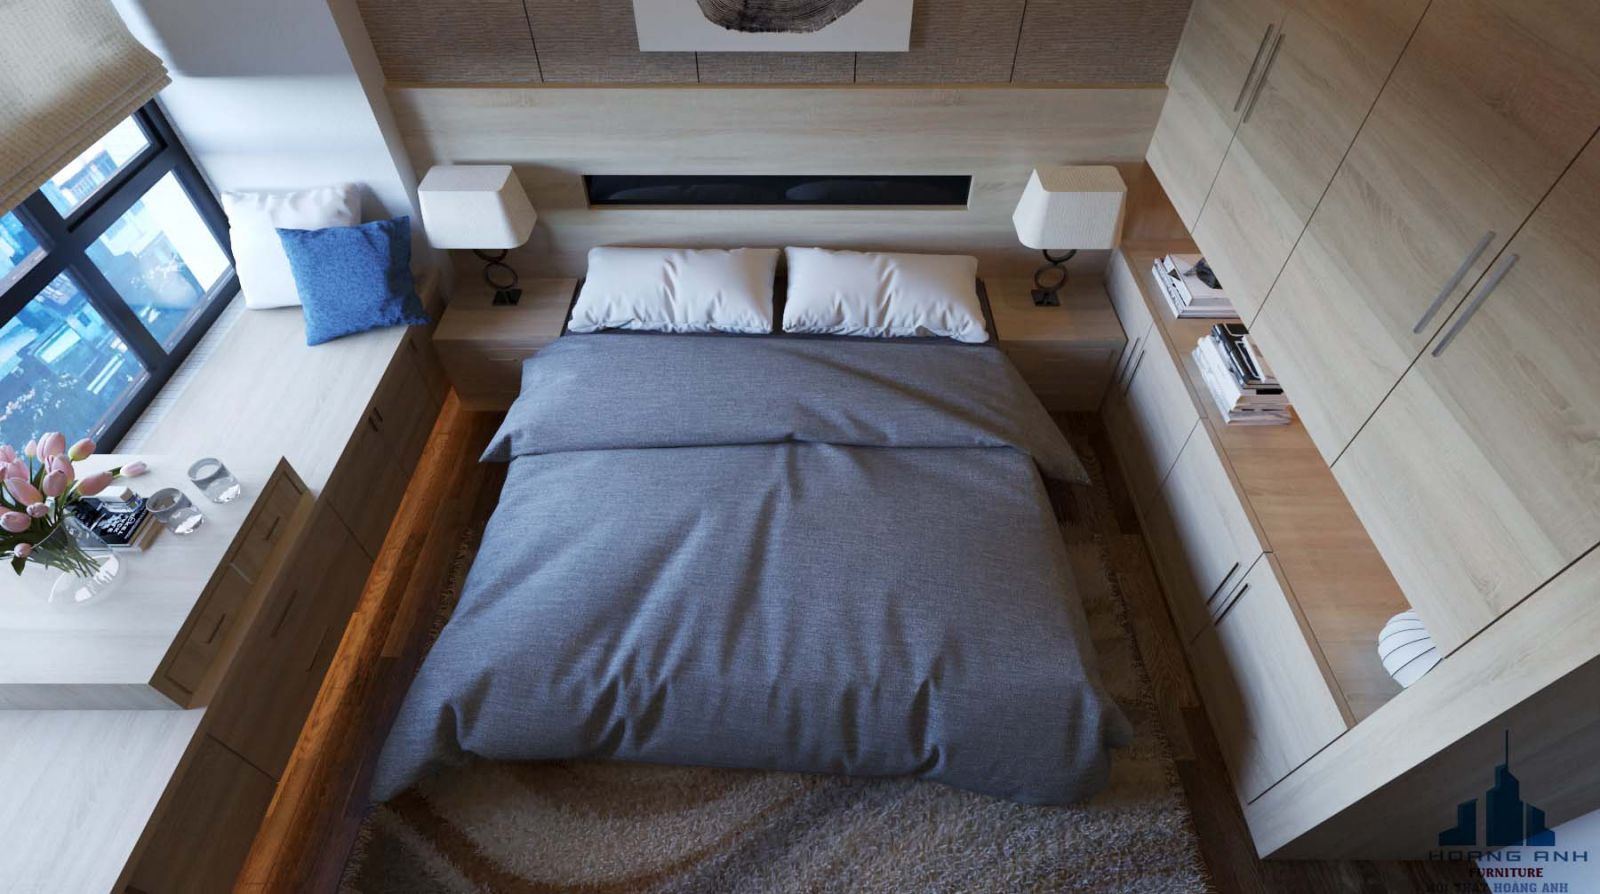 Sử dụng các đồ nội thất có tính kết nối khoảng cách giúp cho phòng ngủ nhỏ của bạn trở nên gọn gàng hơn